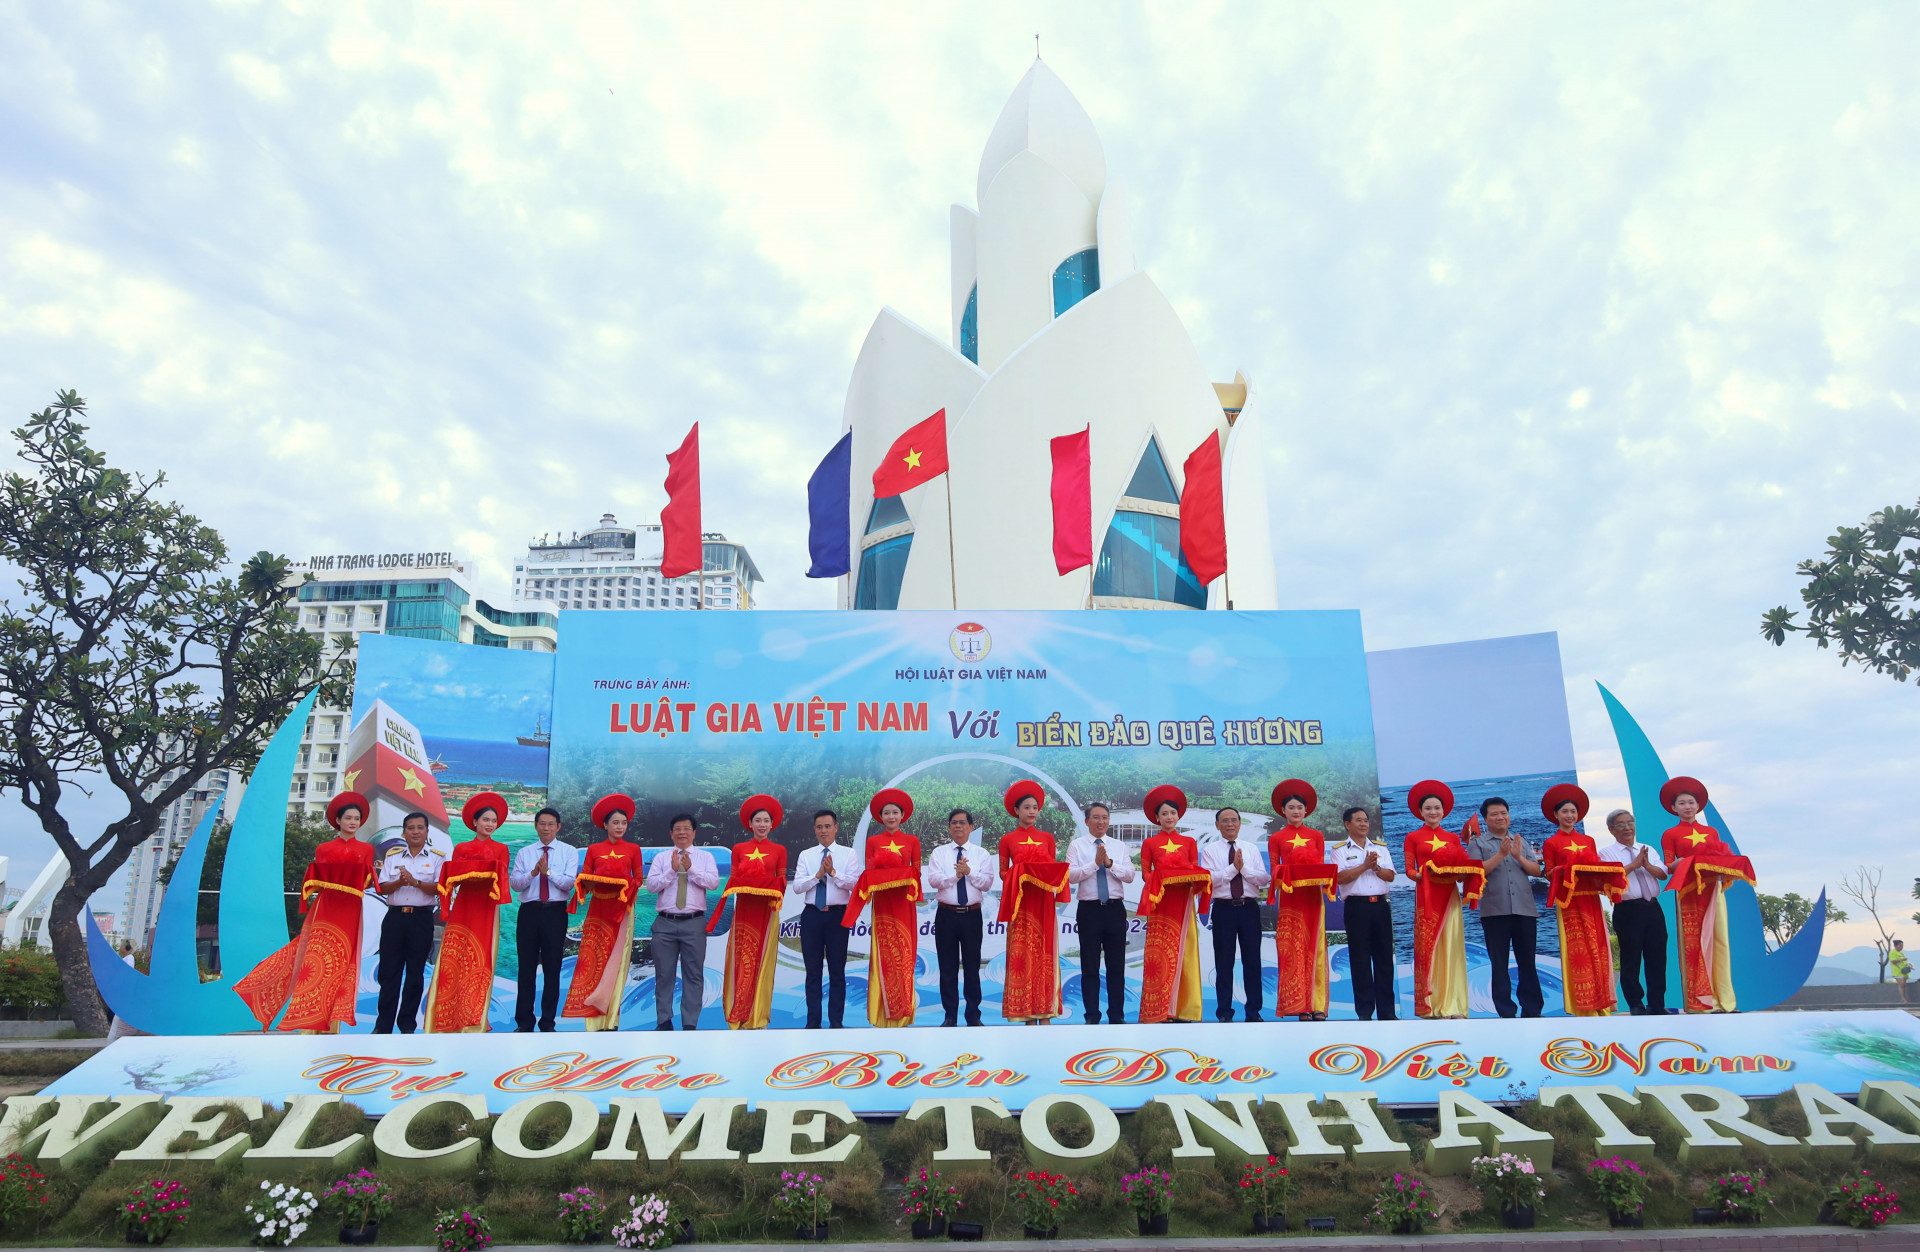 Các đồng chí lãnh đạo cắt băng khai mạc Tuần lễ trưng bày ảnh “Luật gia Việt Nam với biển, đảo quê hương”.